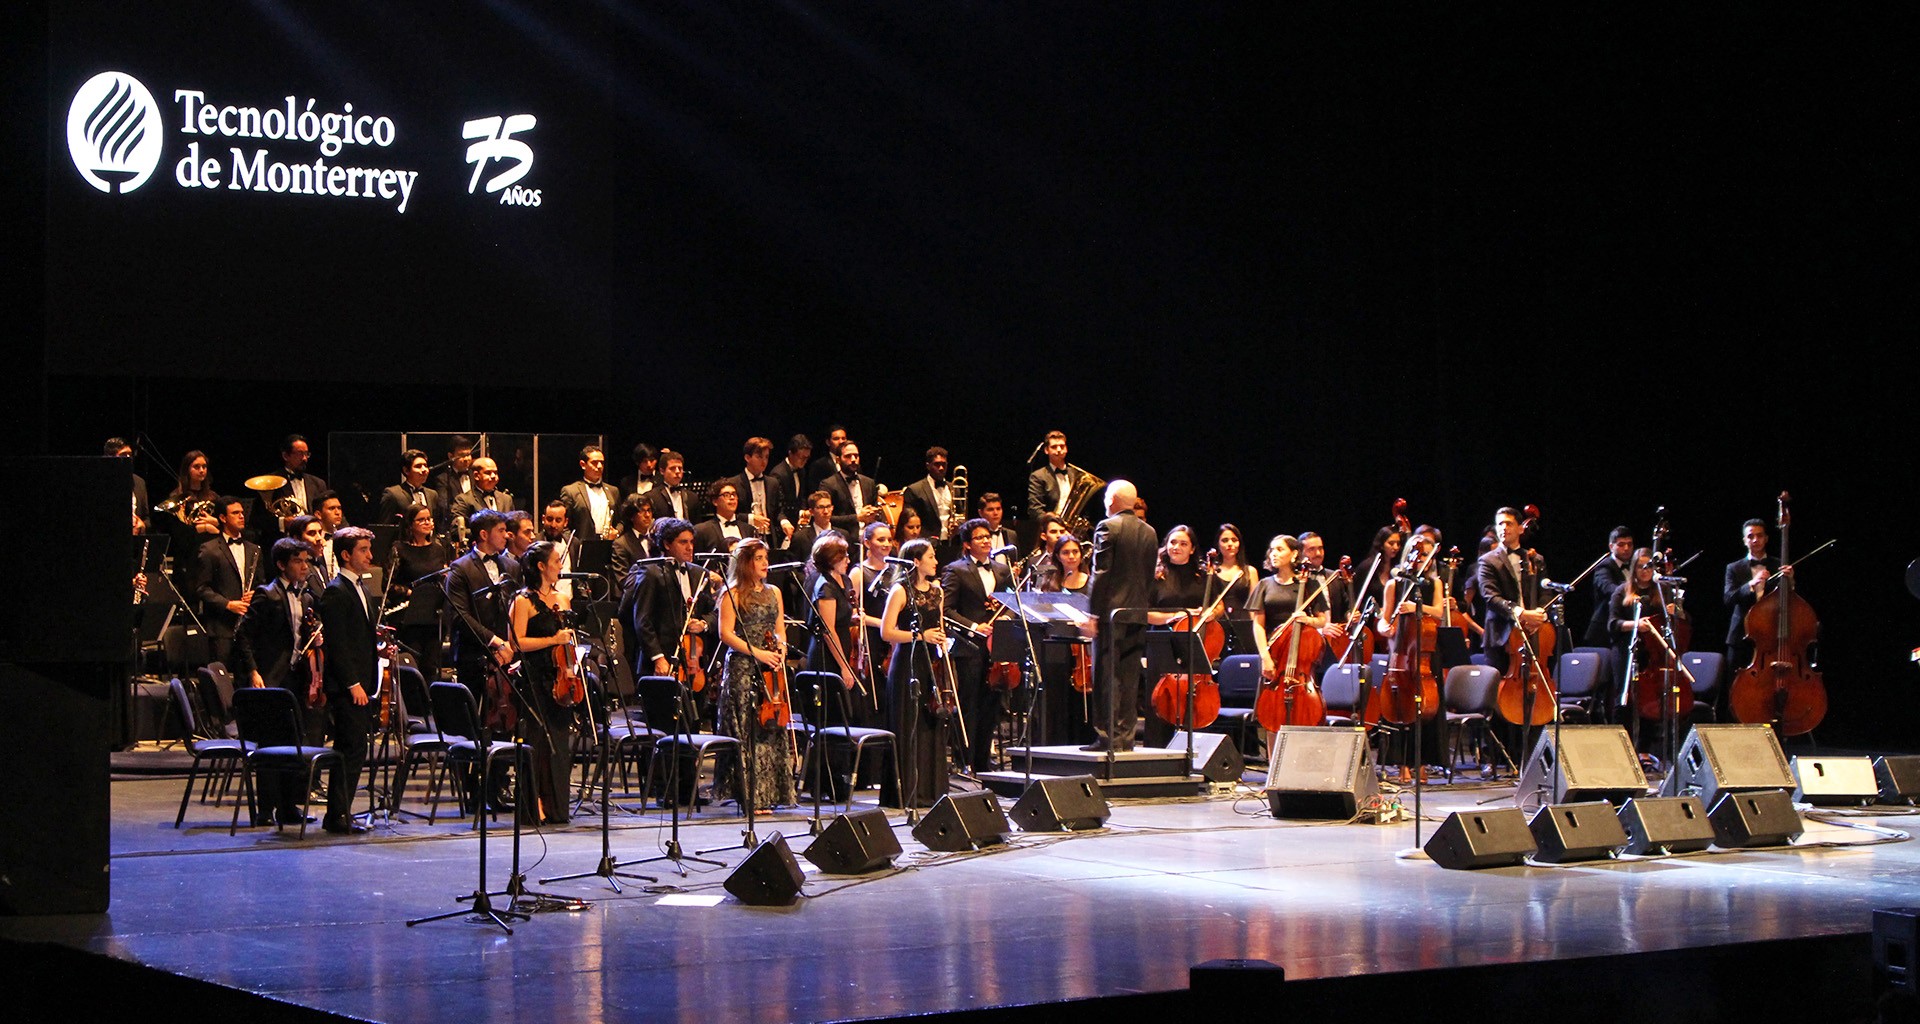 Mariachi Vargas concierto por el 75 aniversario del Tec de Monterrey